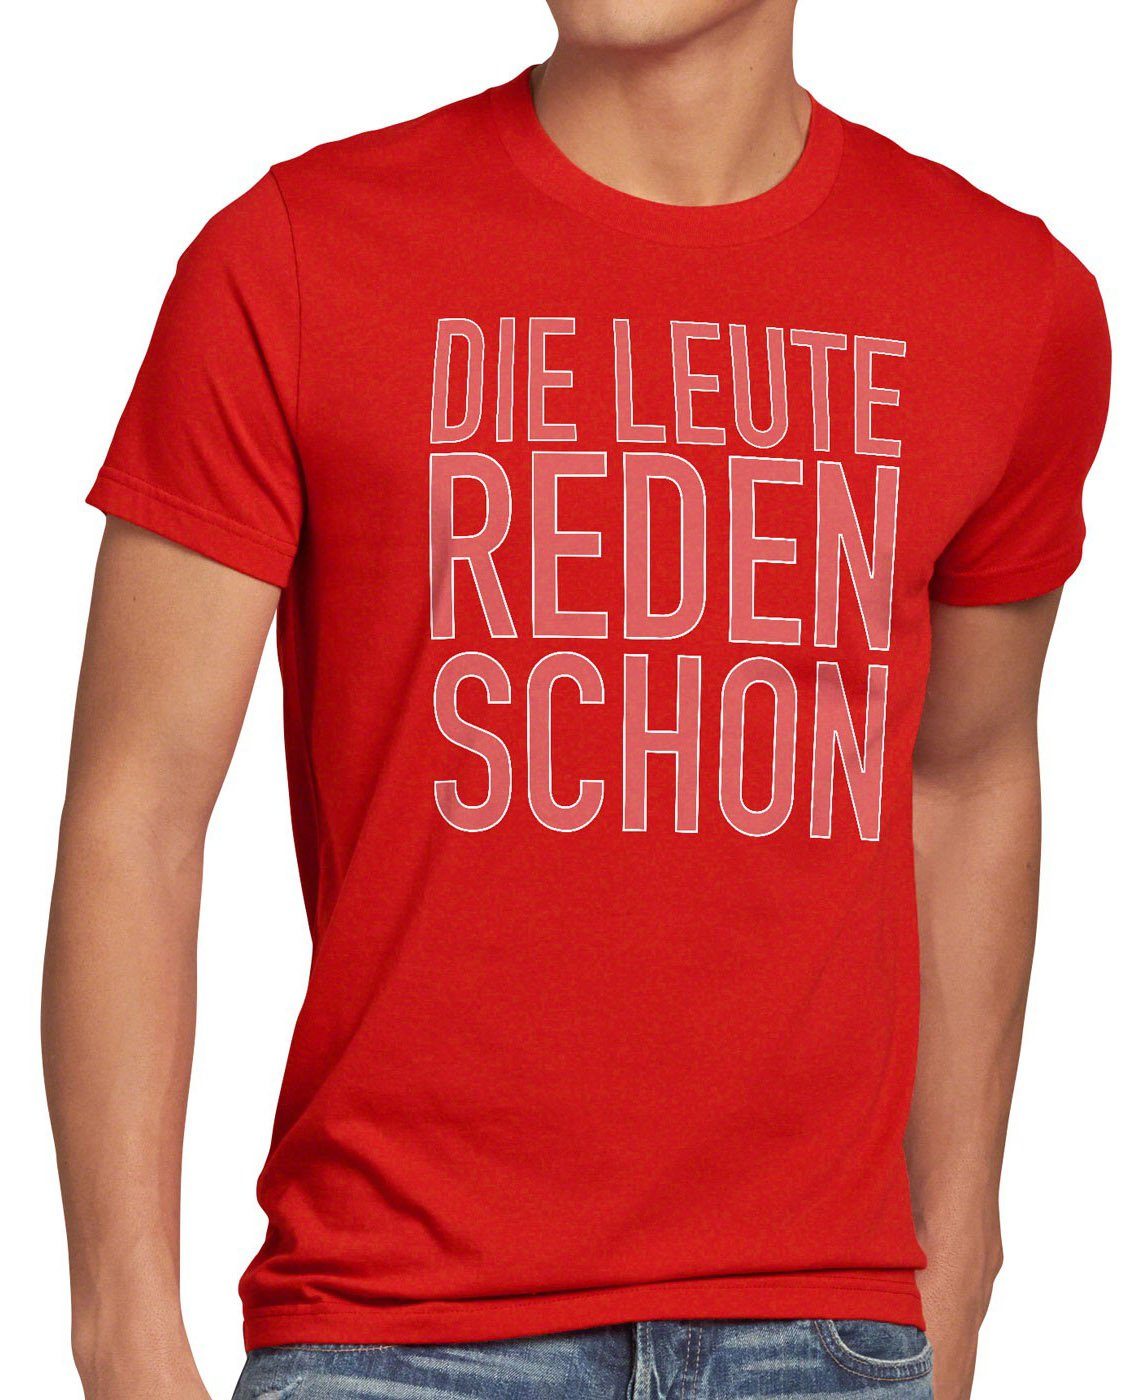 style3 Print-Shirt Herren T-Shirt Die Leute reden schon Funshirt Spruch Berlin spruchshirt hipster rot